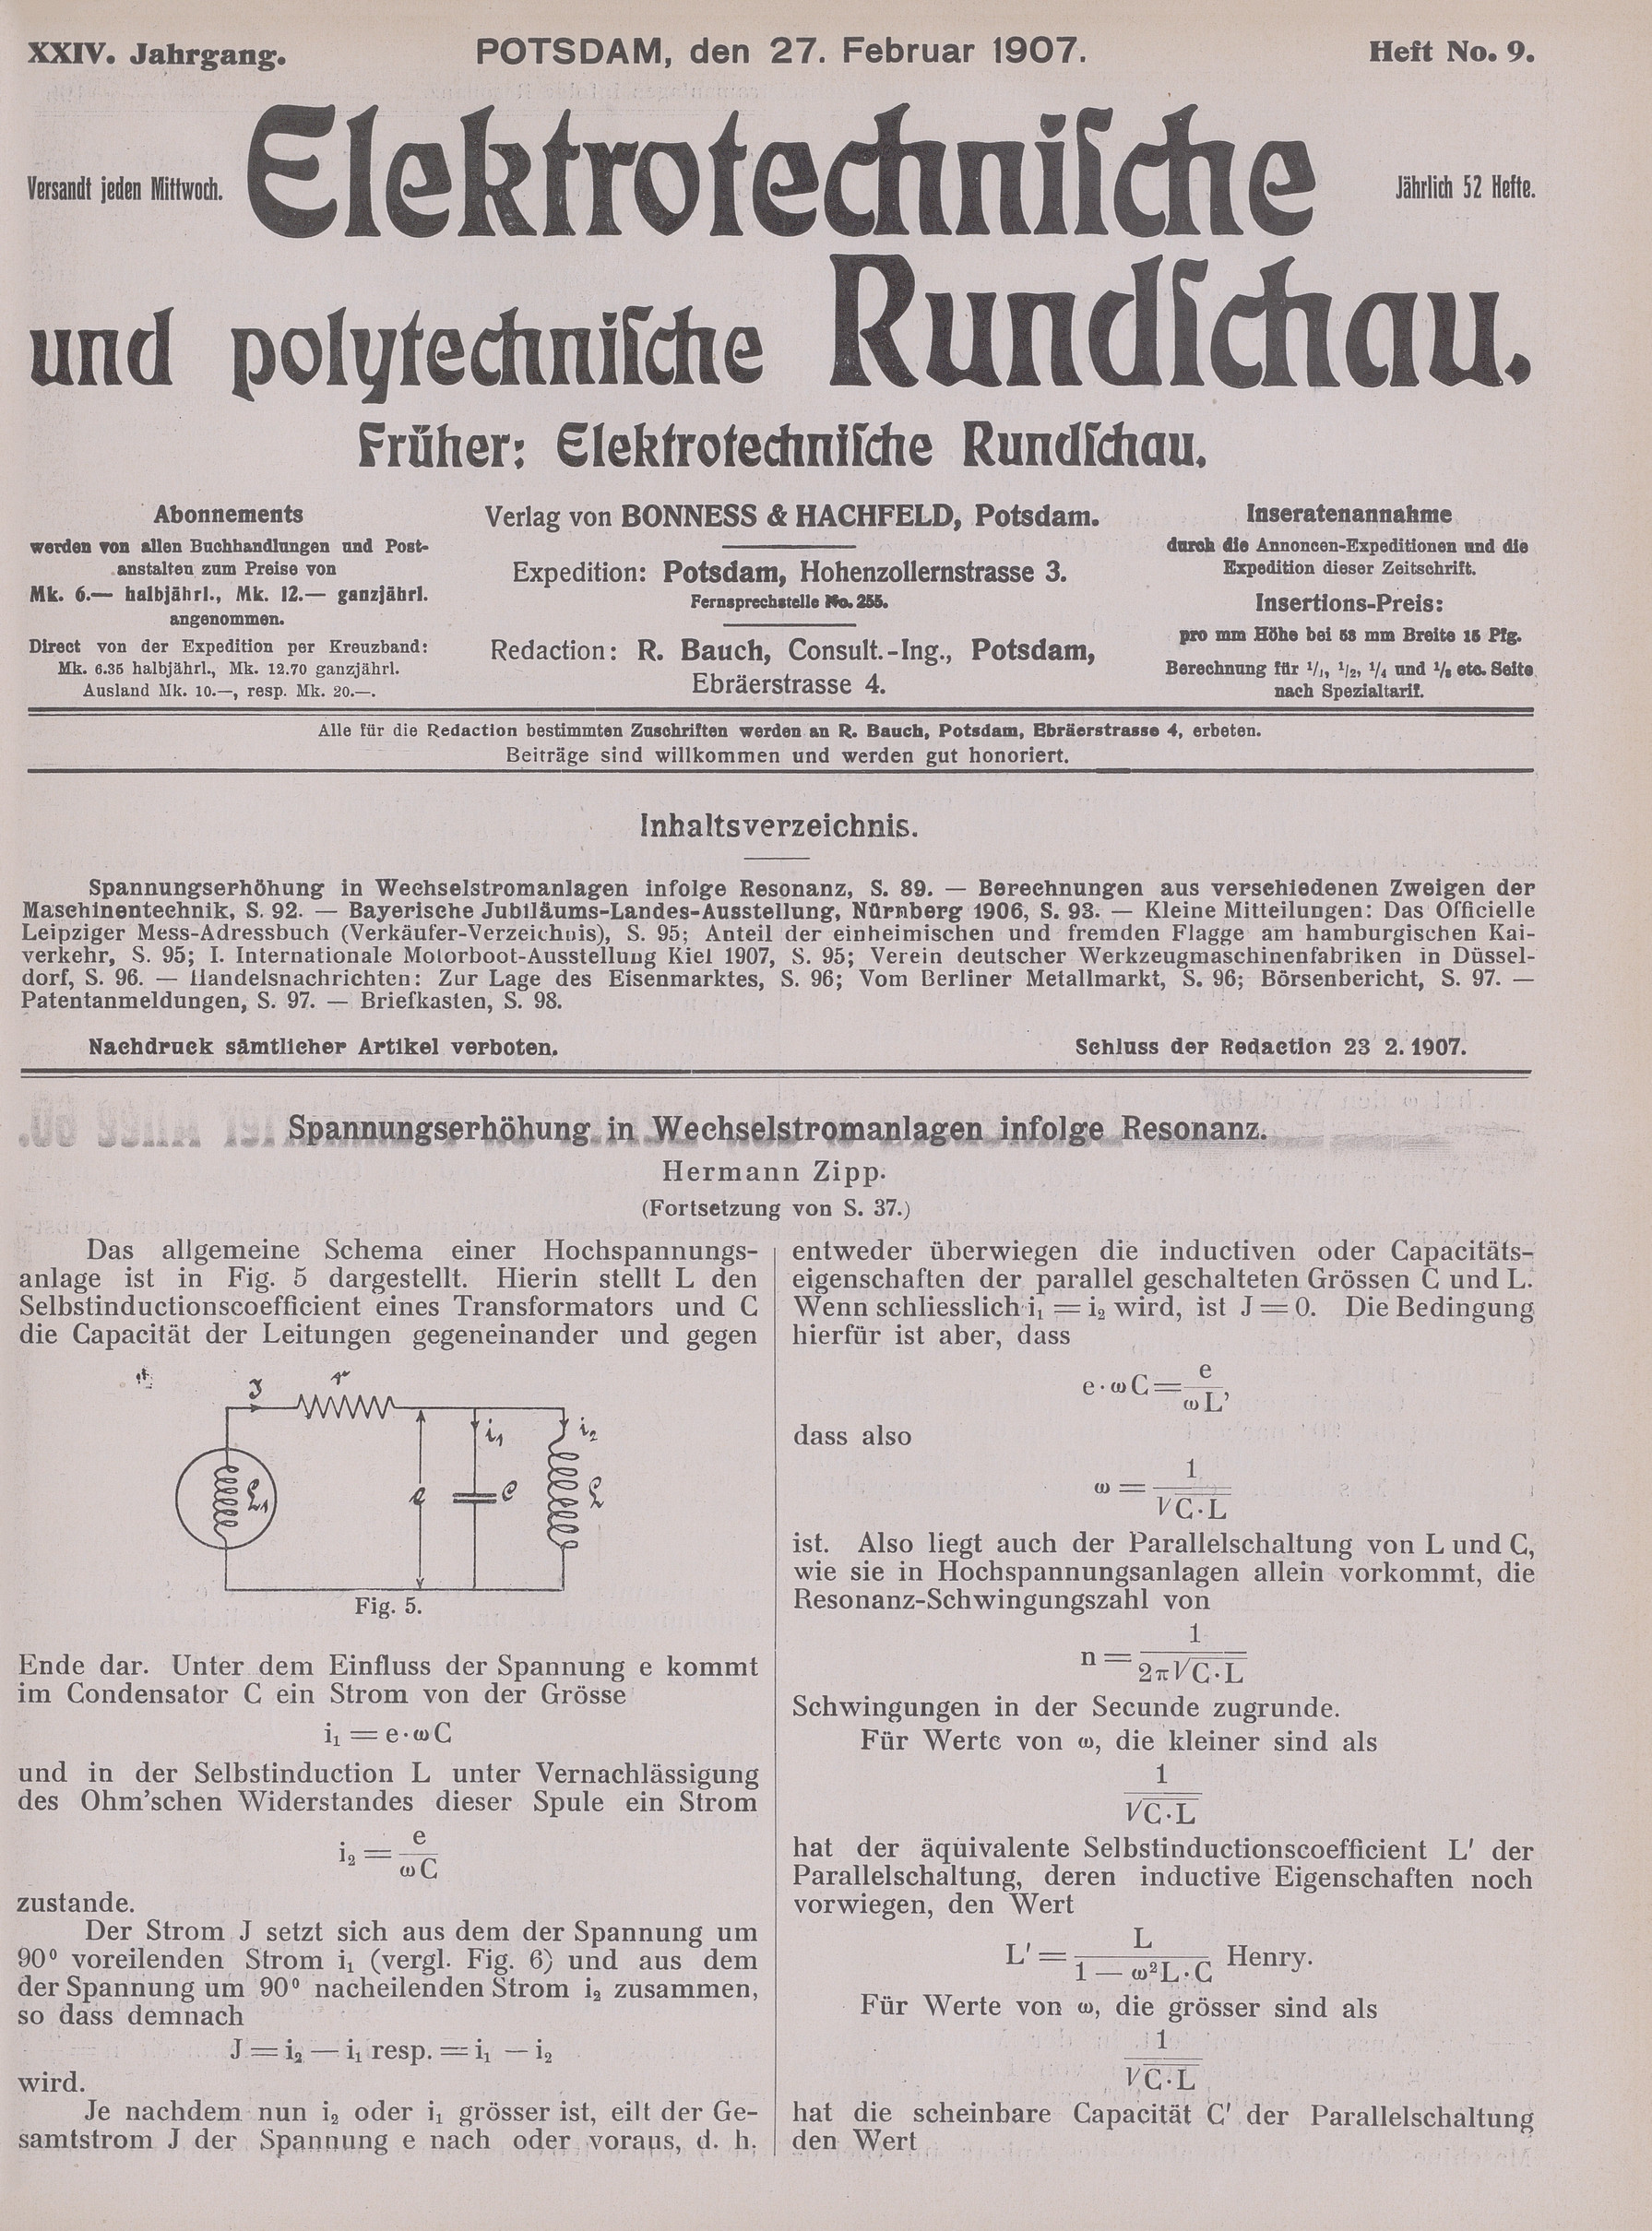 Elektrotechnische und polytechnische Rundschau, XXIV. Jahrgang, Heft No. 9